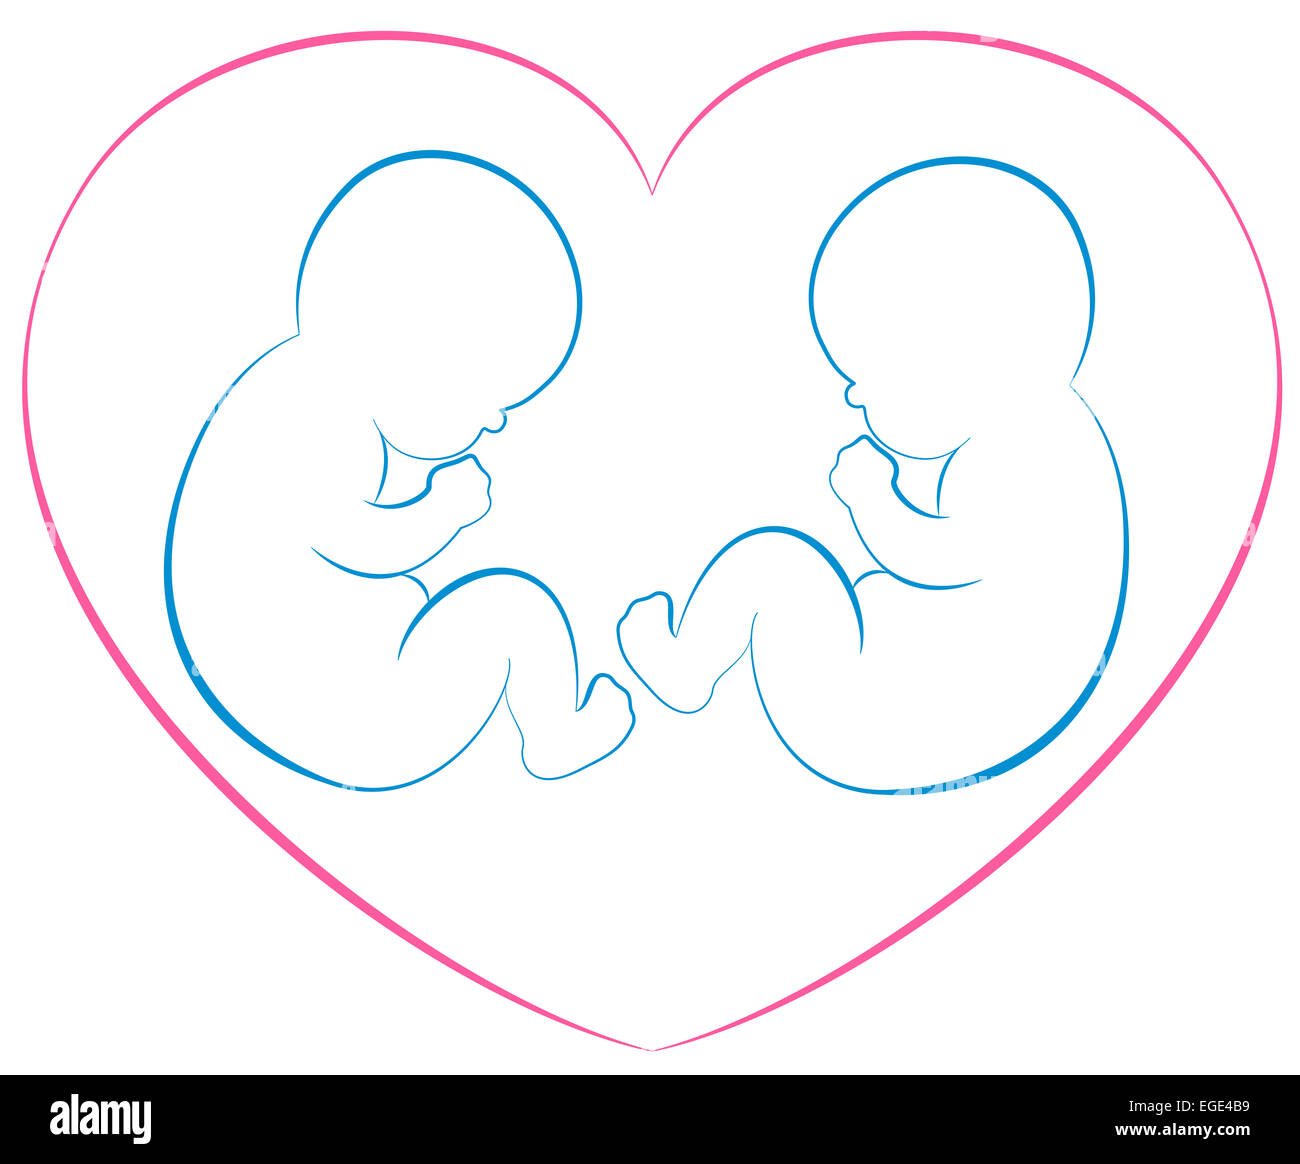 Abbildung zwei Babys oder Zwillinge mit einem rosa Herzen um sie herum zu skizzieren. Stockfoto